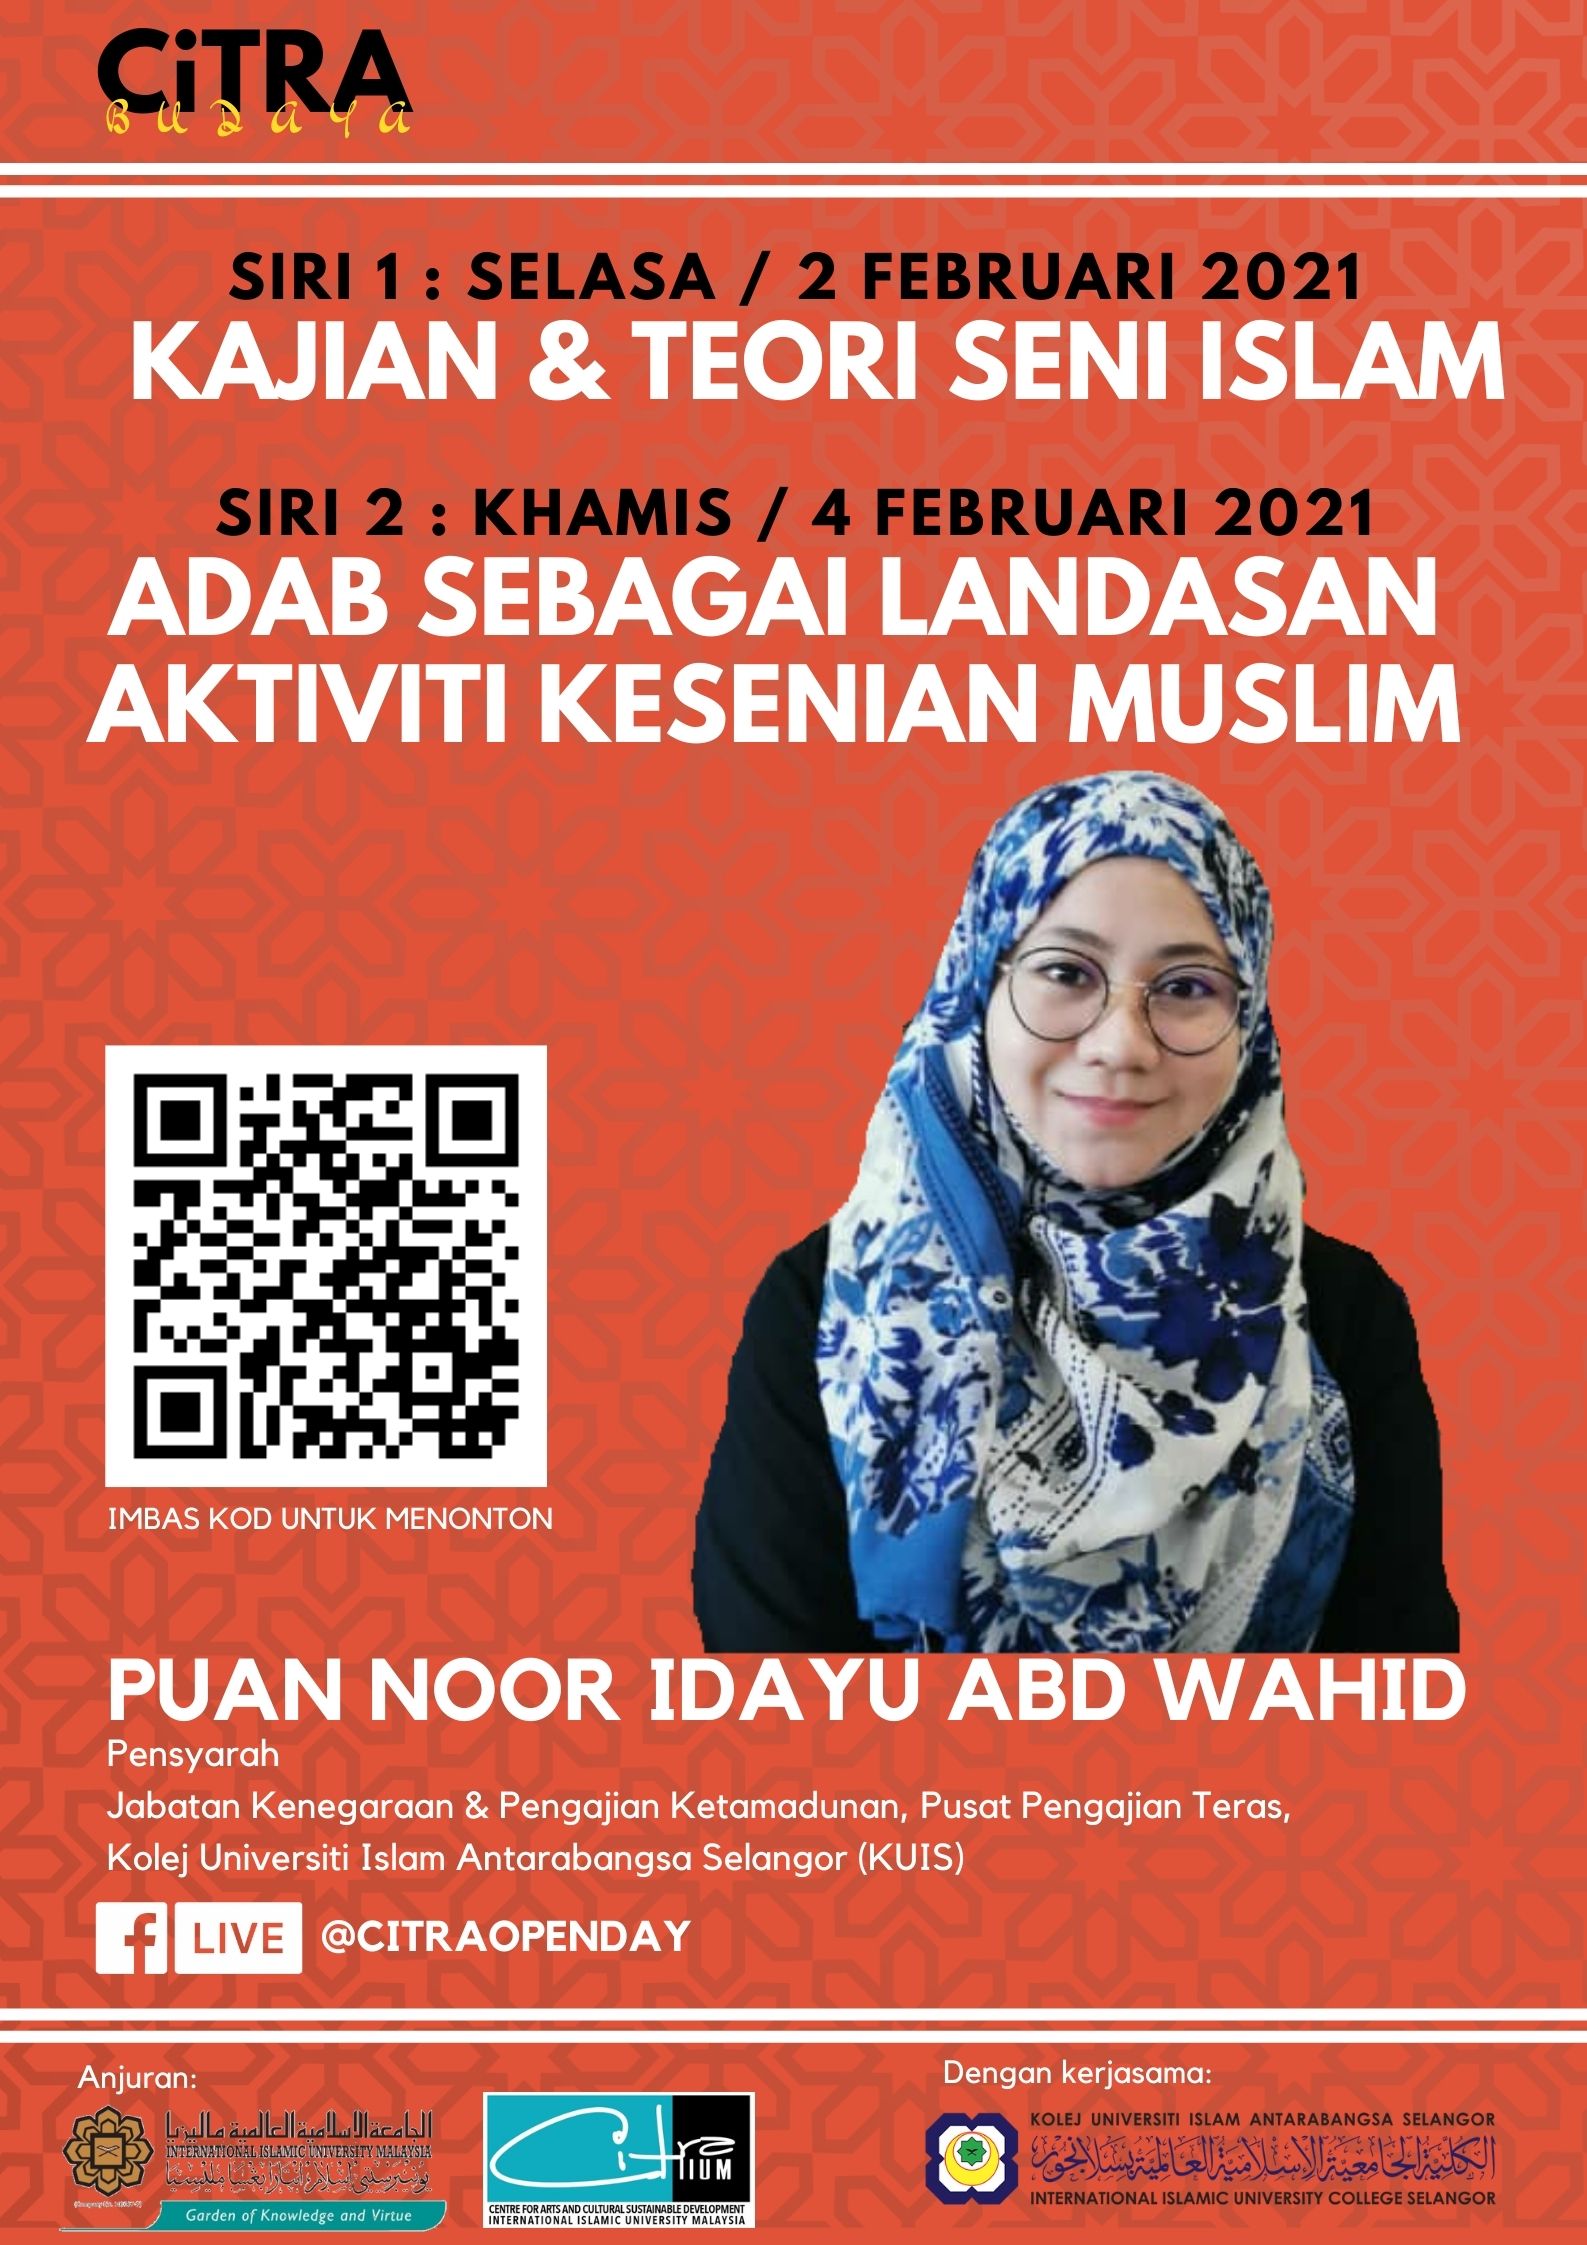 CiTRA Budaya (Siri 1) - Kajian & Teori Seni Islam & (Siri 2) - Adab Sebagai Landasan Aktiviti Kesenian Muslim